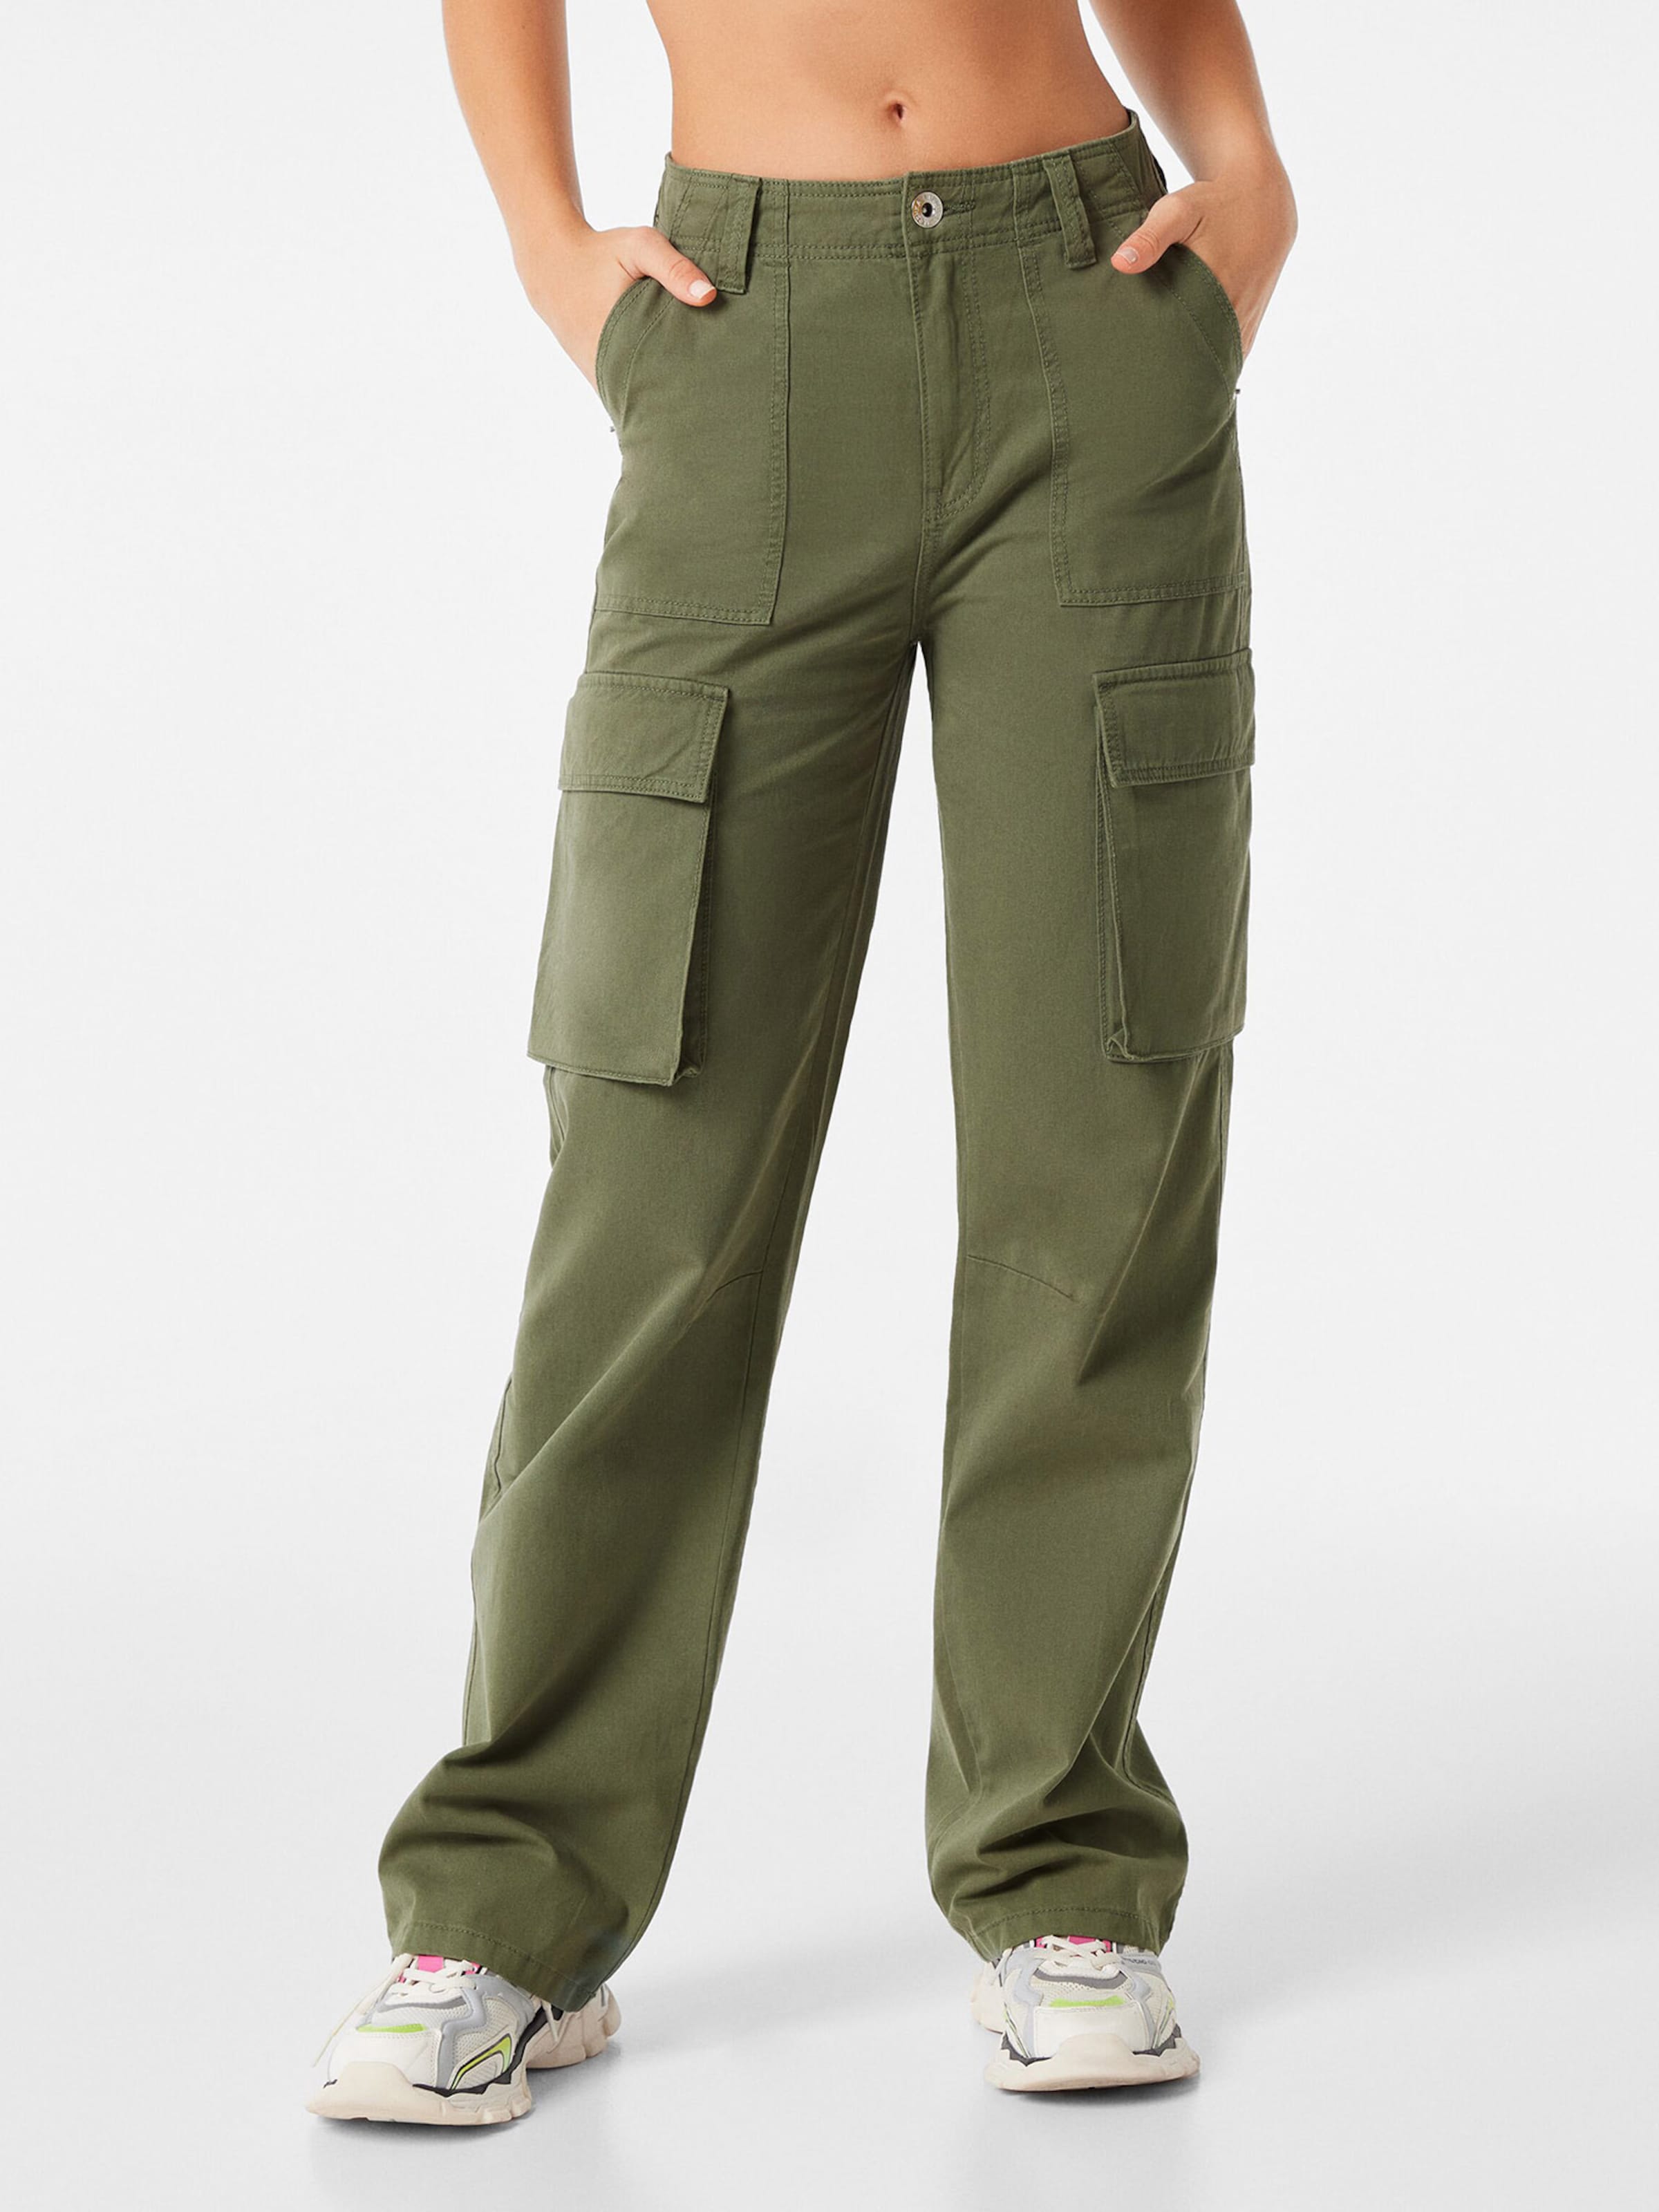 Multi-pocket twill cargo trousers - Trousers - Women | Bershka